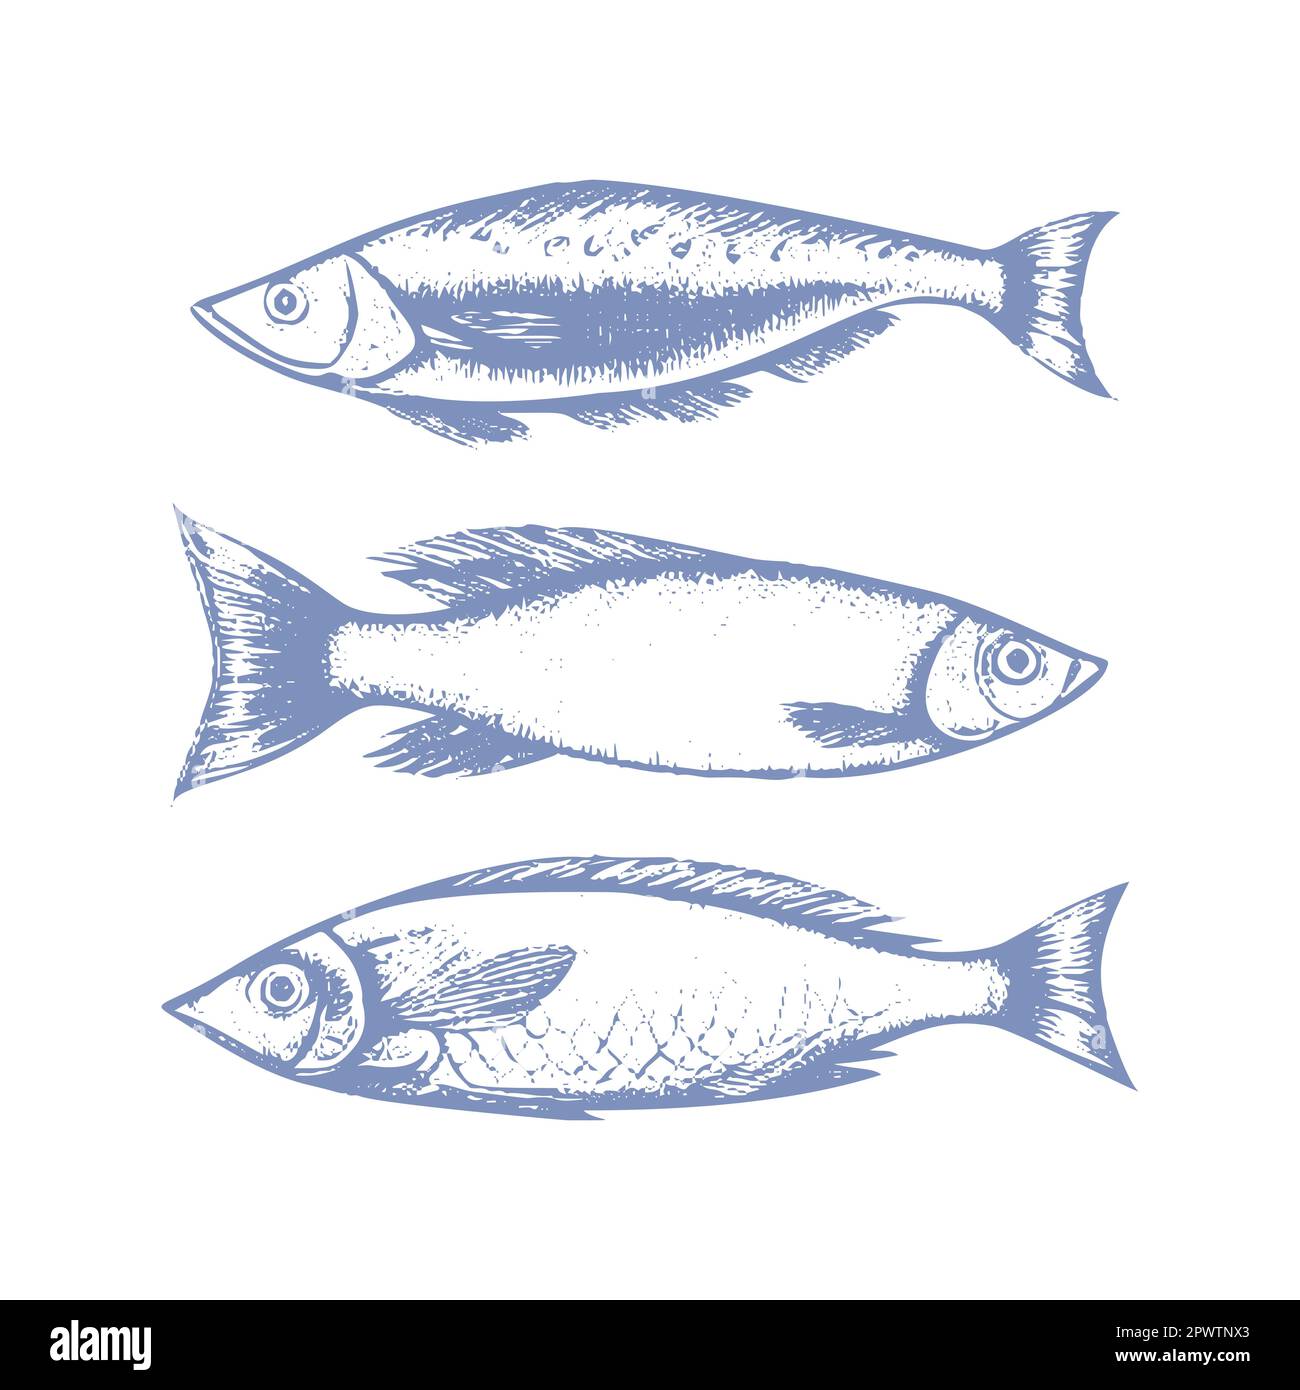 Vecteur Collection graphique de petits poissons à sprat , dessinés dans le style de l'art linéaire Le menu de fruits de mer comprend des sardines et des rats. Mer et océan Illustration de Vecteur